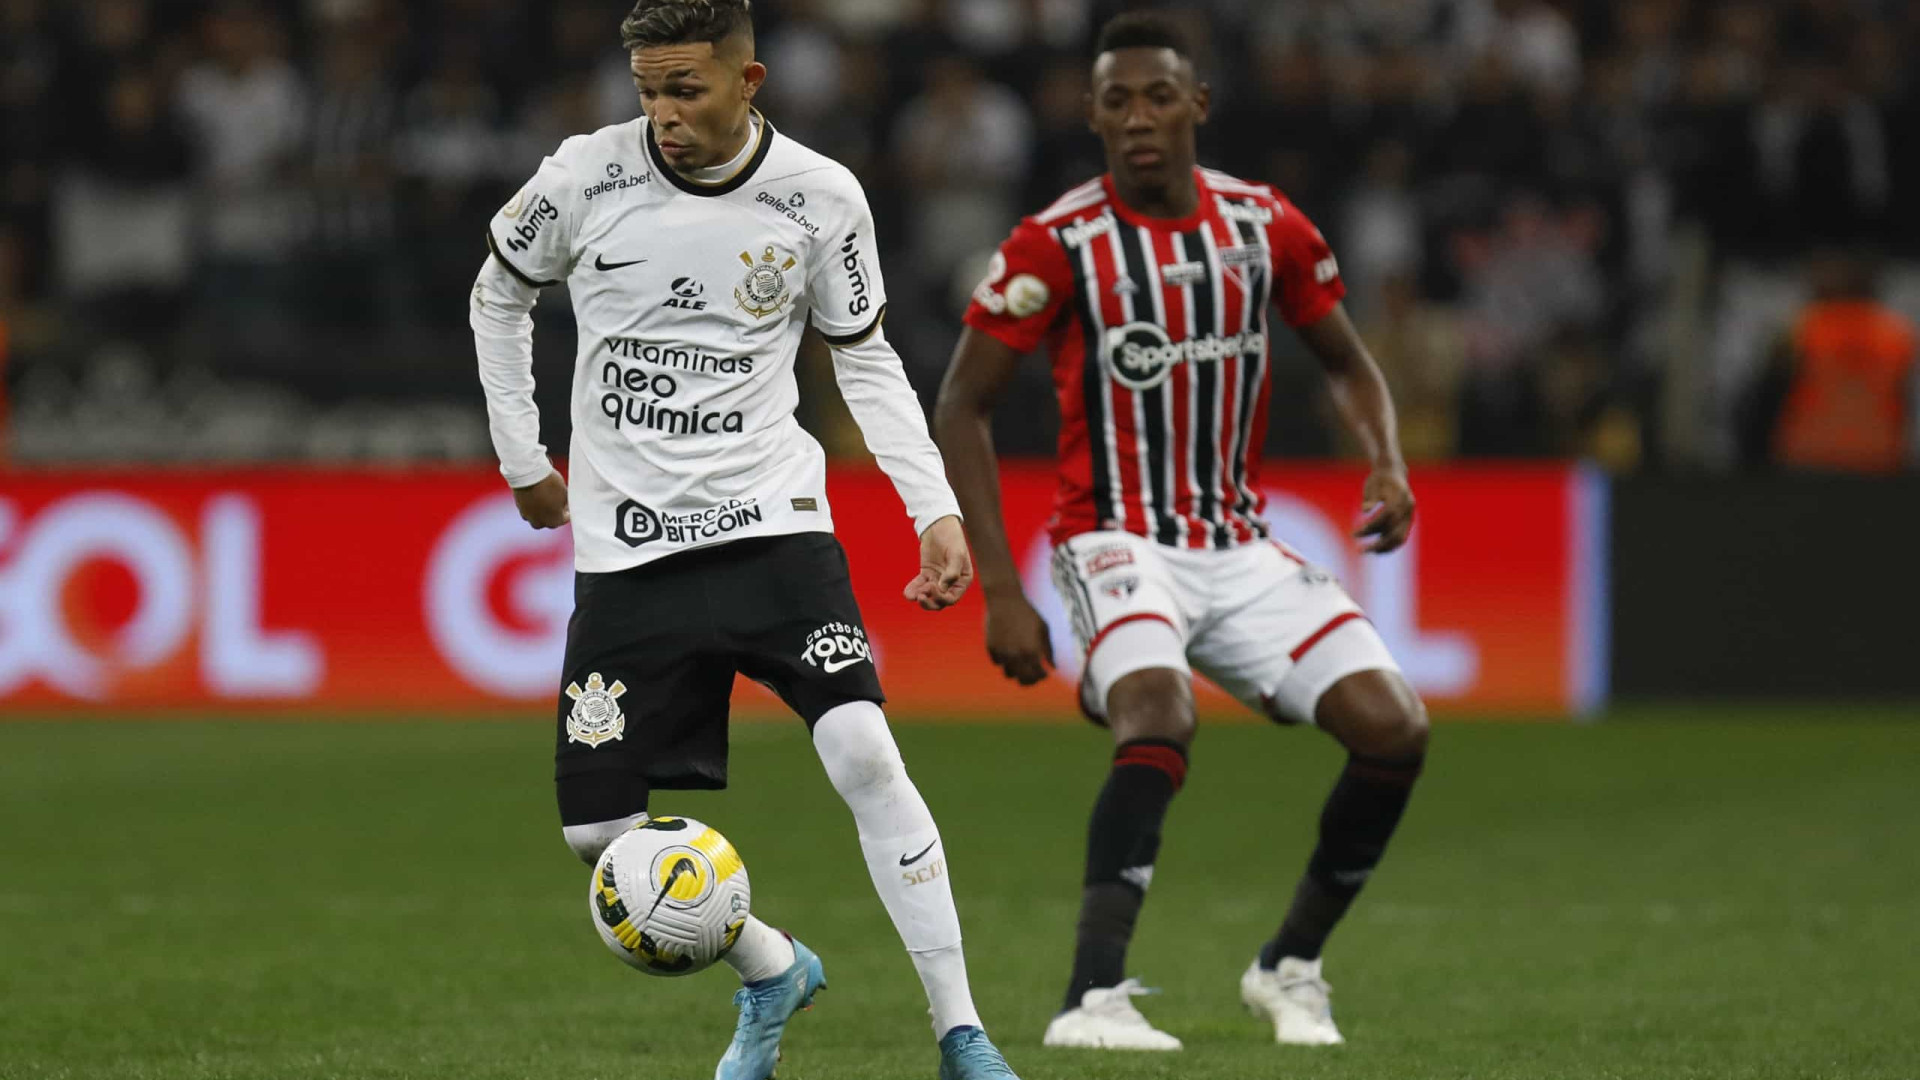 Corinthians empata e mantém tabu de não perder para o São Paulo em sua arena